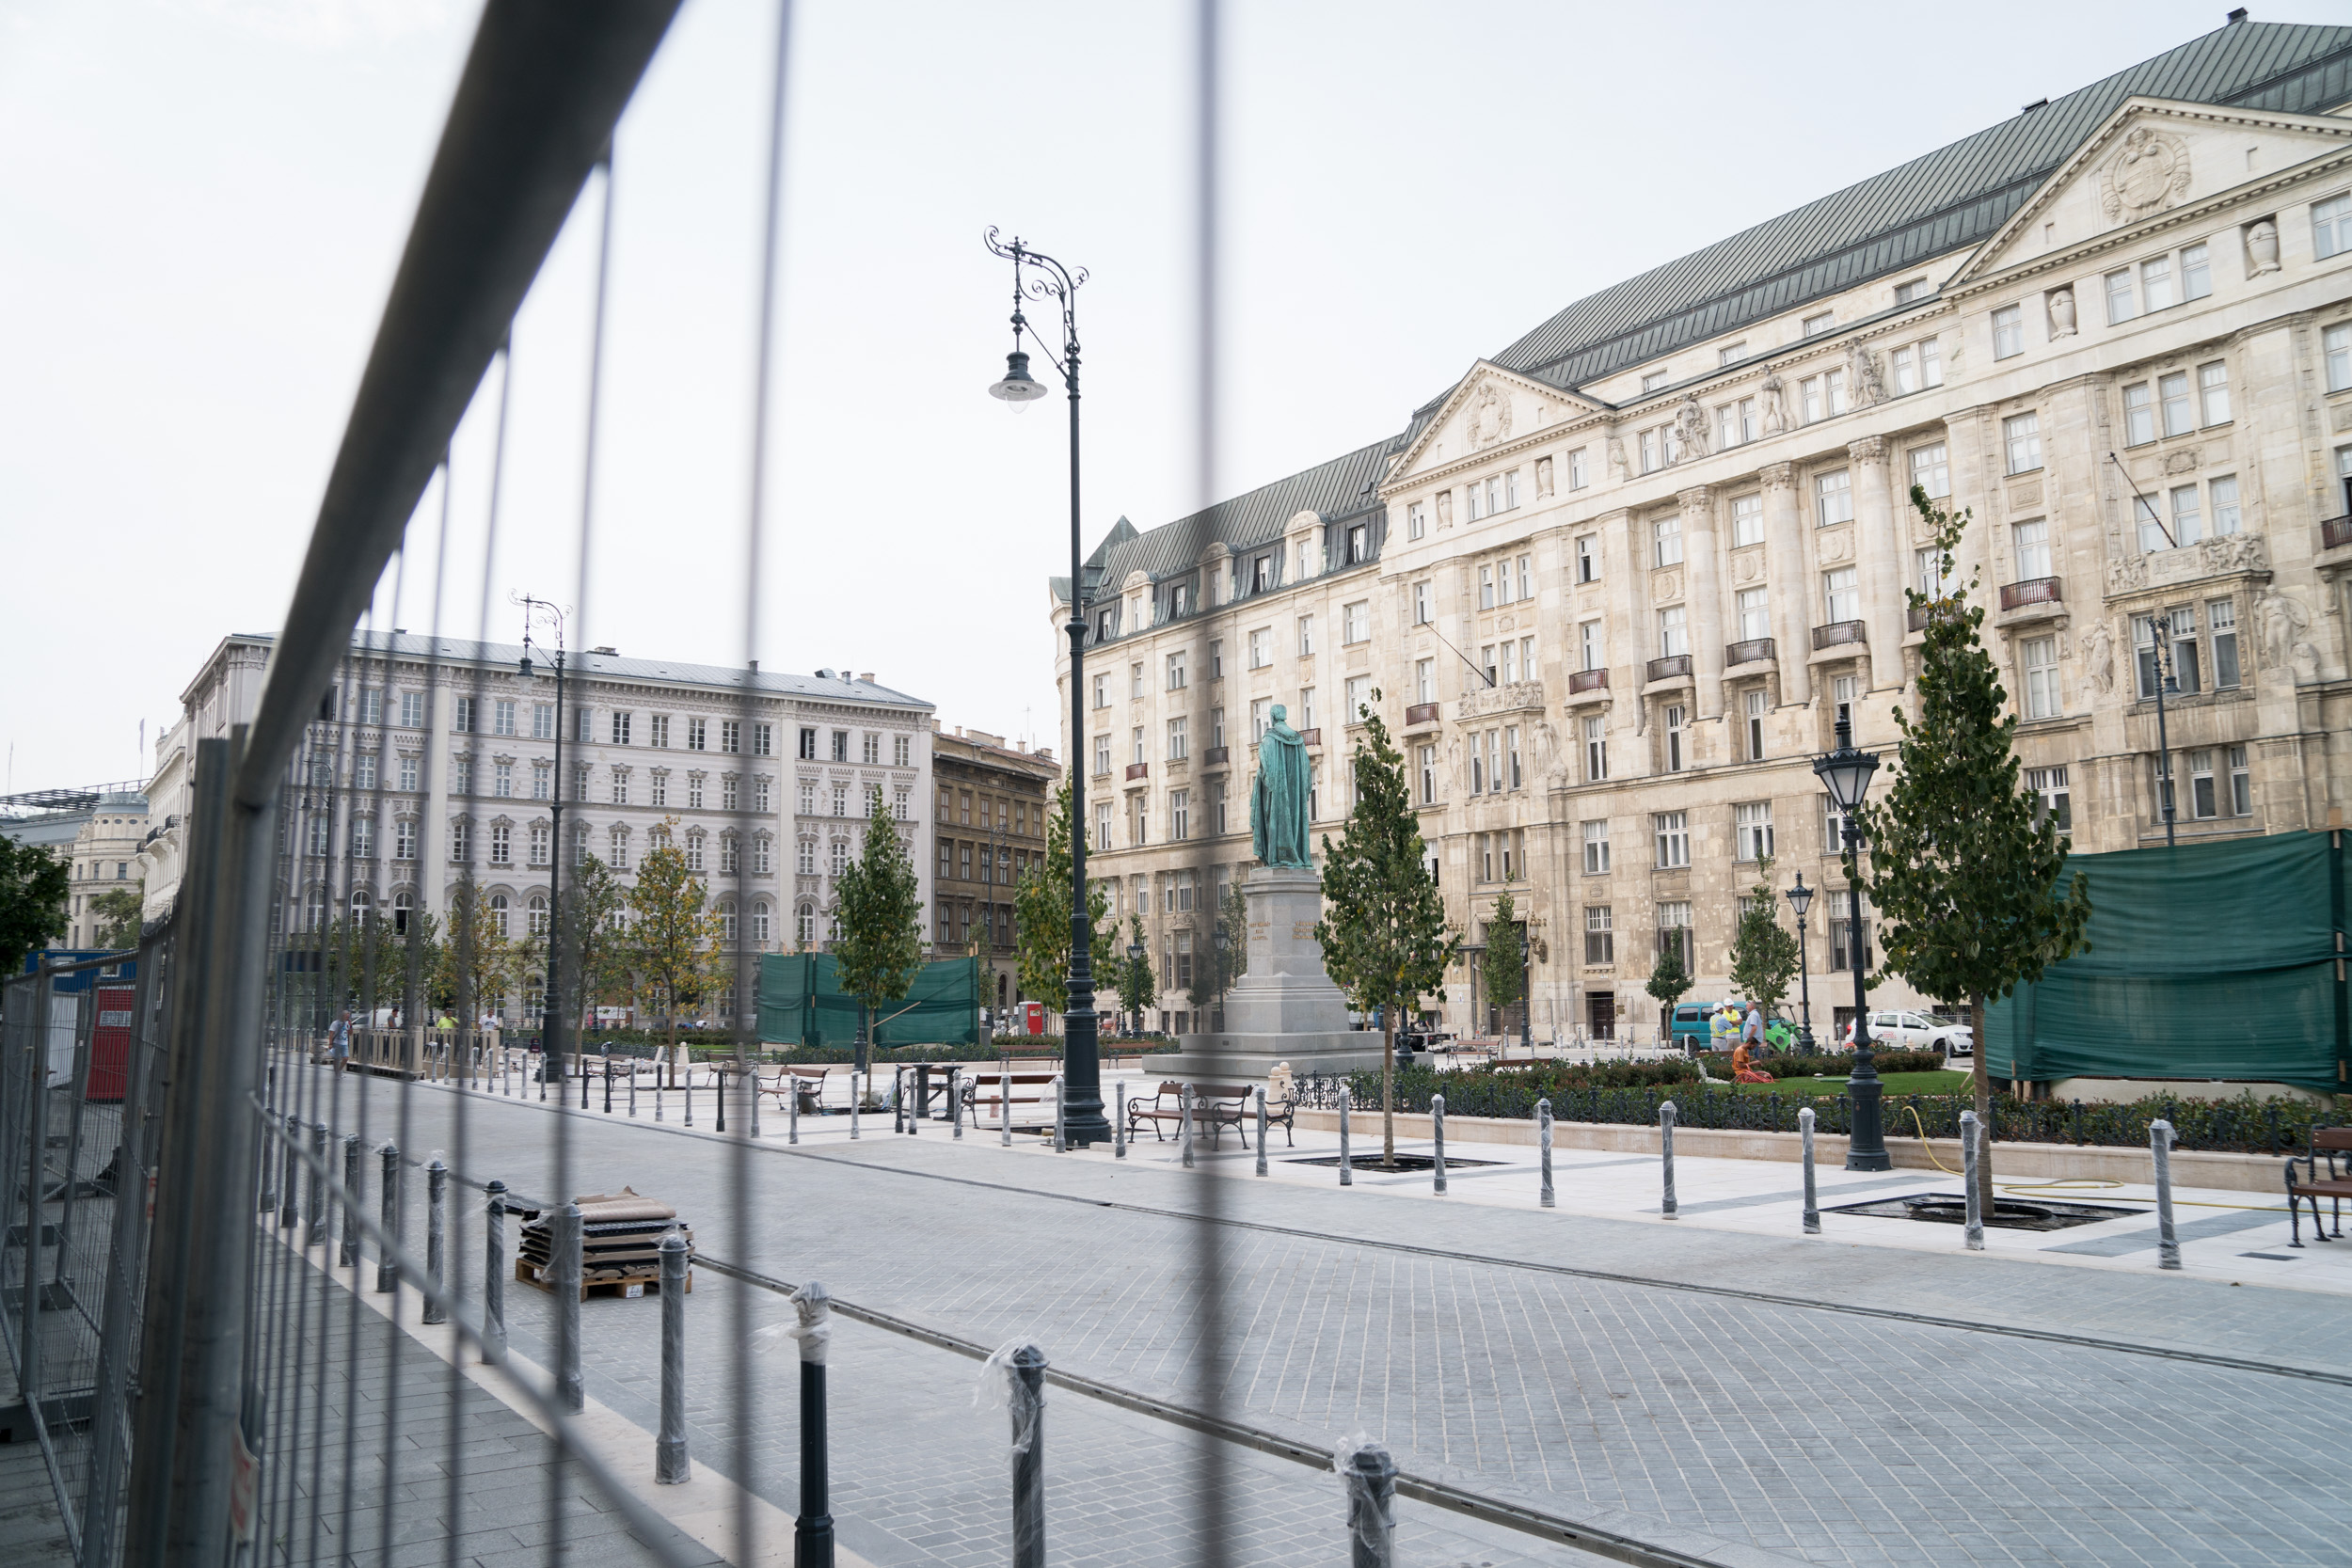 Így néz ki a frissen felújított József nádor tér